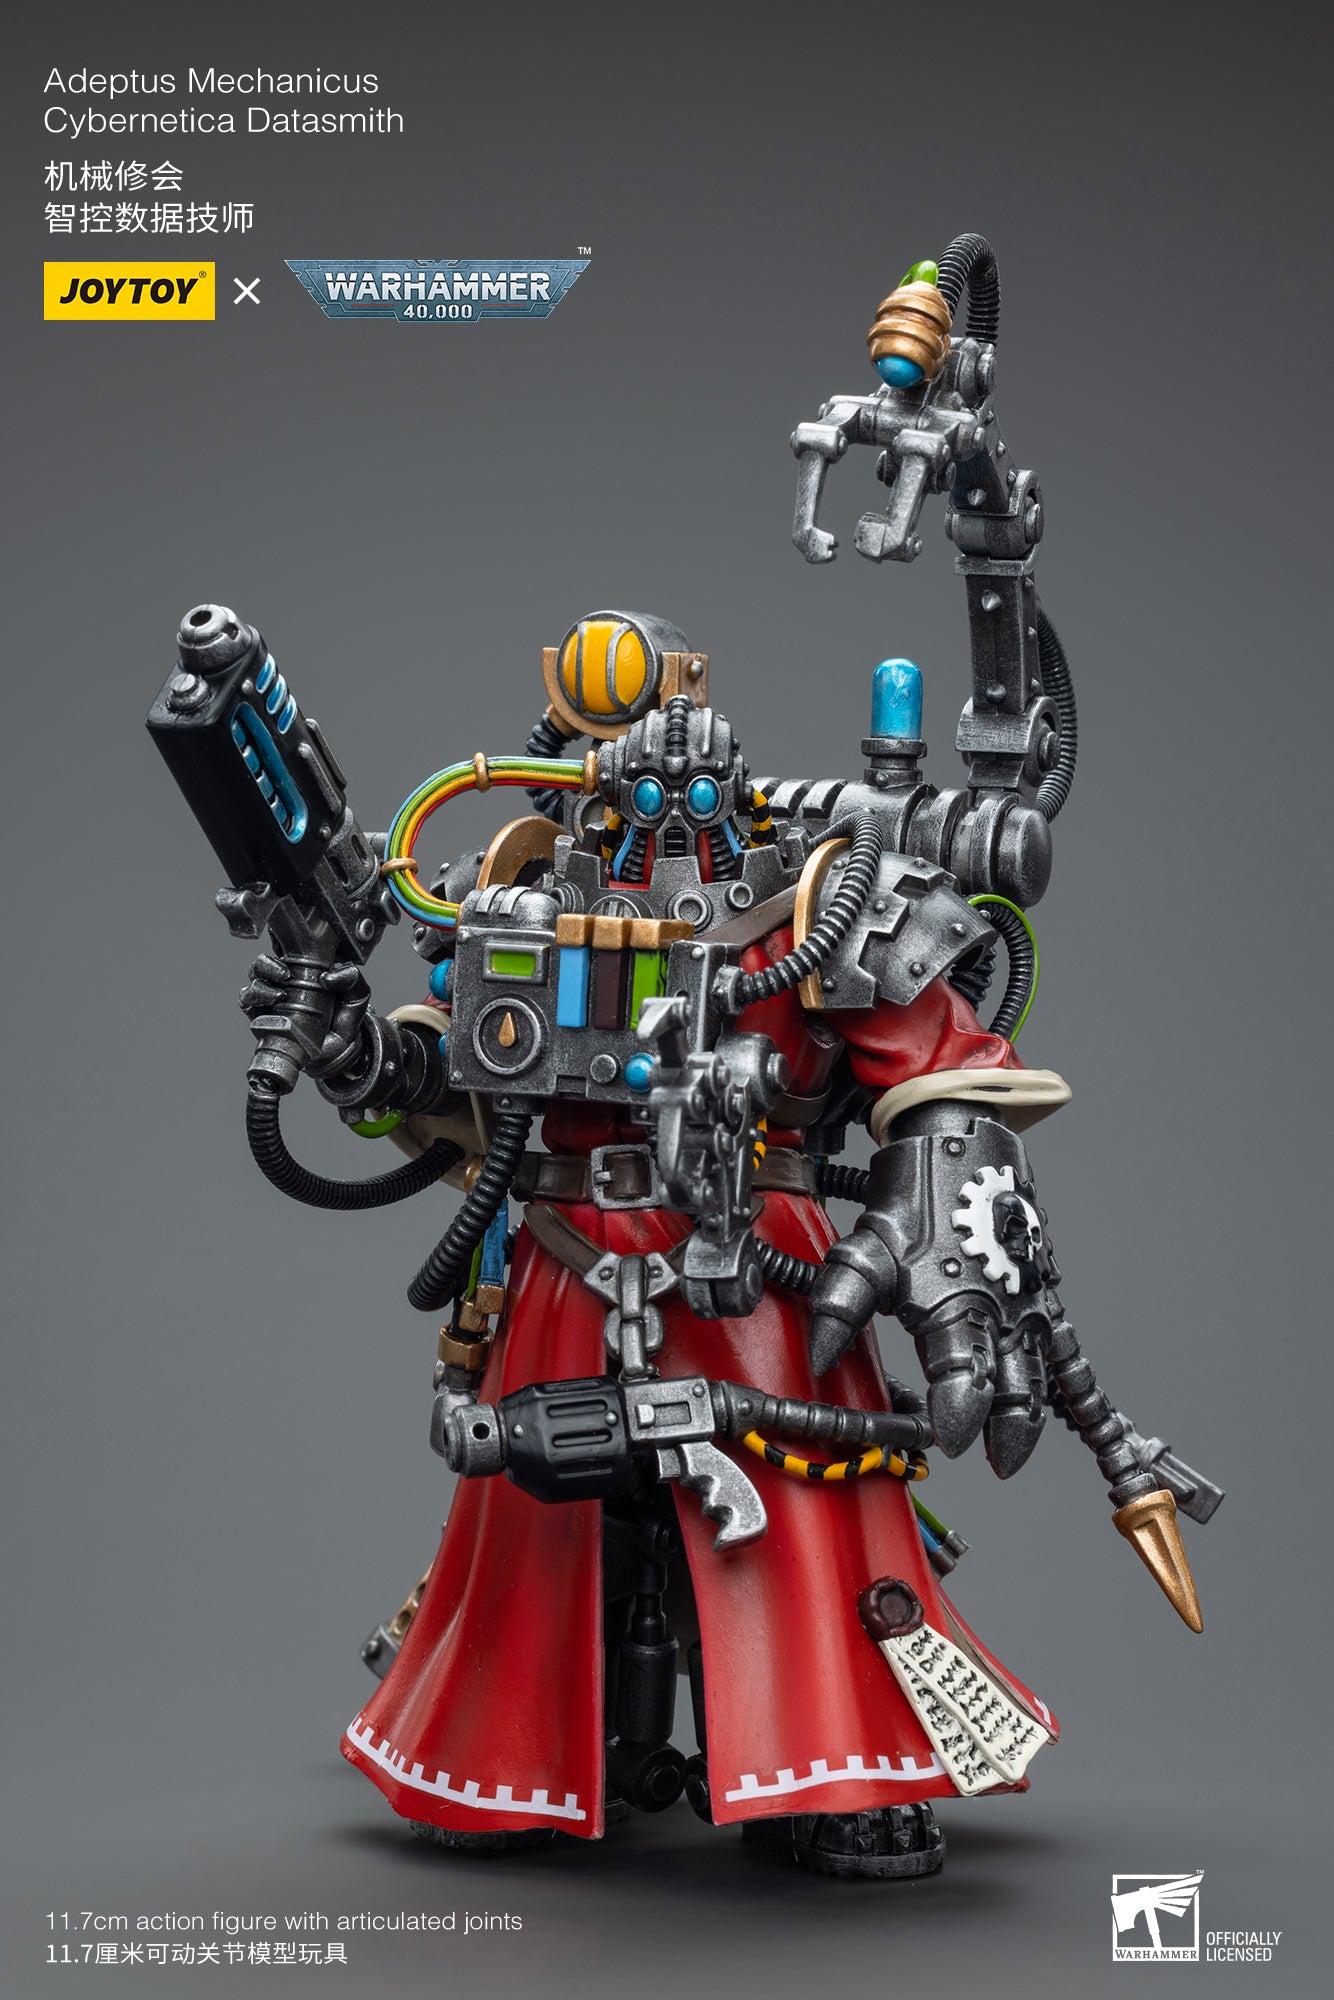 Adeptus Mechanicus Cybernetica Datasmith - Warhammer 40K Action Figure By JOYTOY